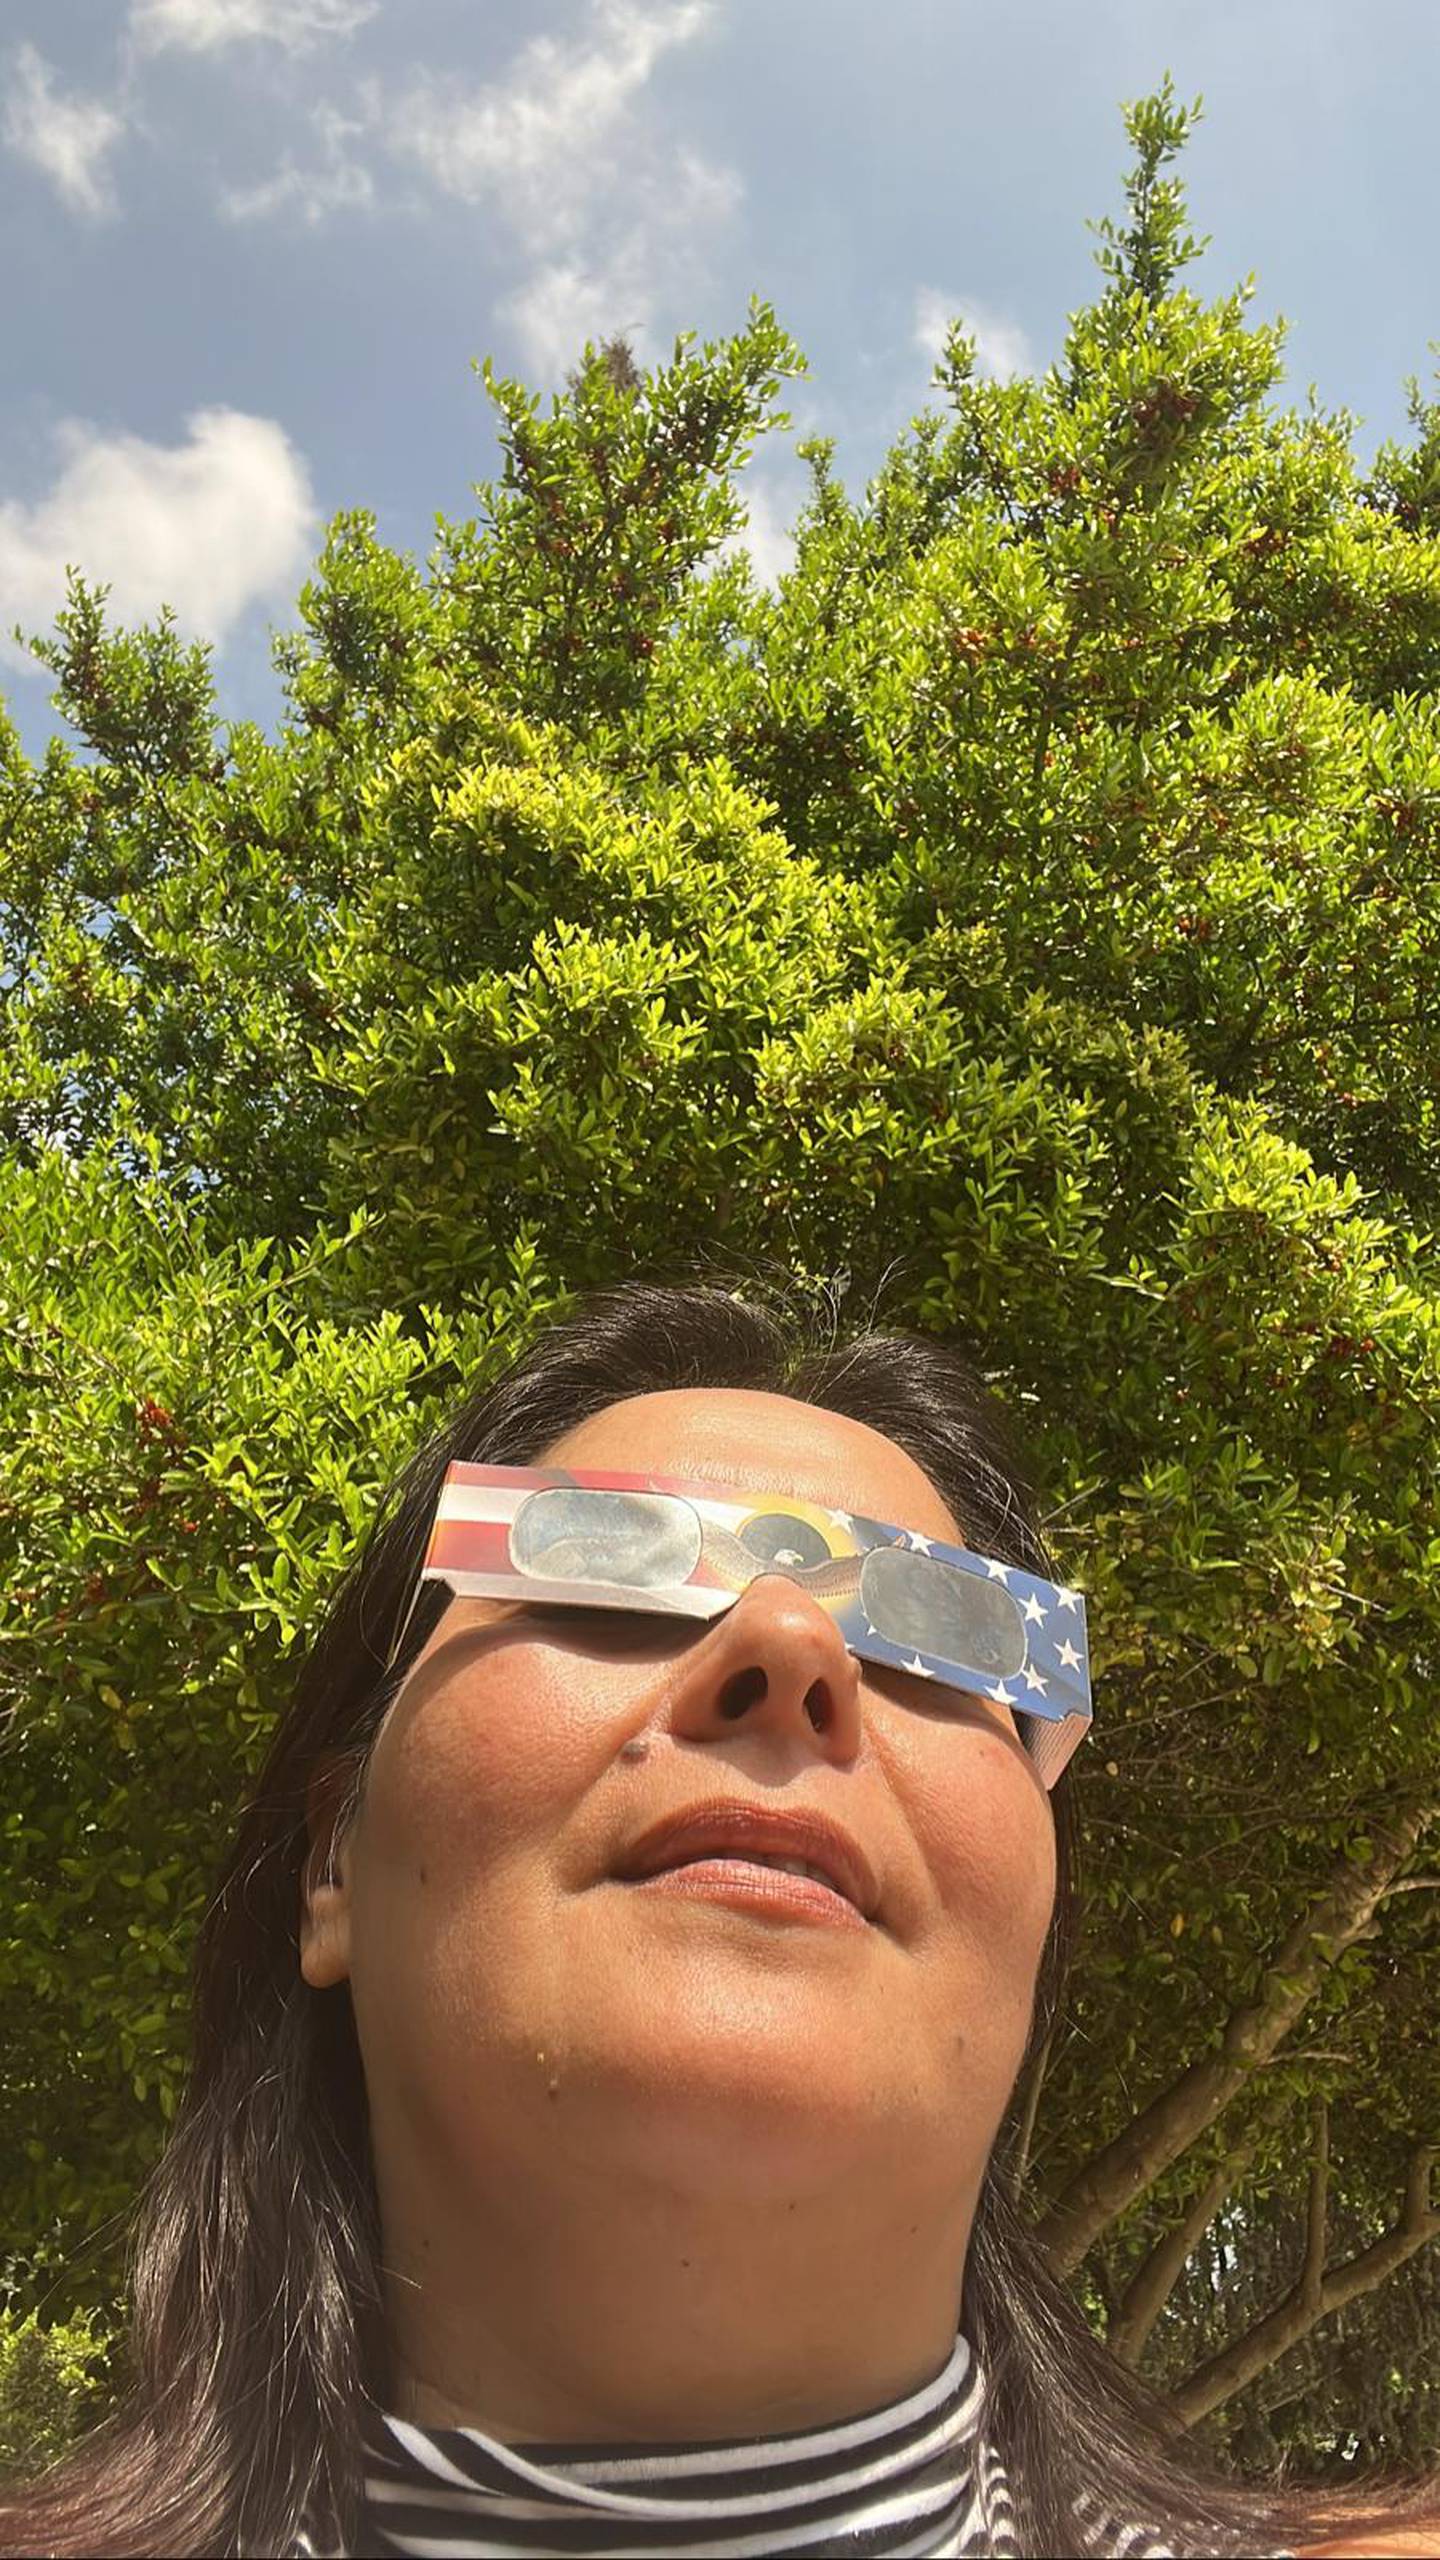 La costarricense Patricia Vindas, vecina de North Dallas, en Texas, Estados Unidos, vio el eclipse total de este 8 de abril con especial atención porque en 1991, el de Costa Rica, estaba embarazada y no la dejaron verlo.